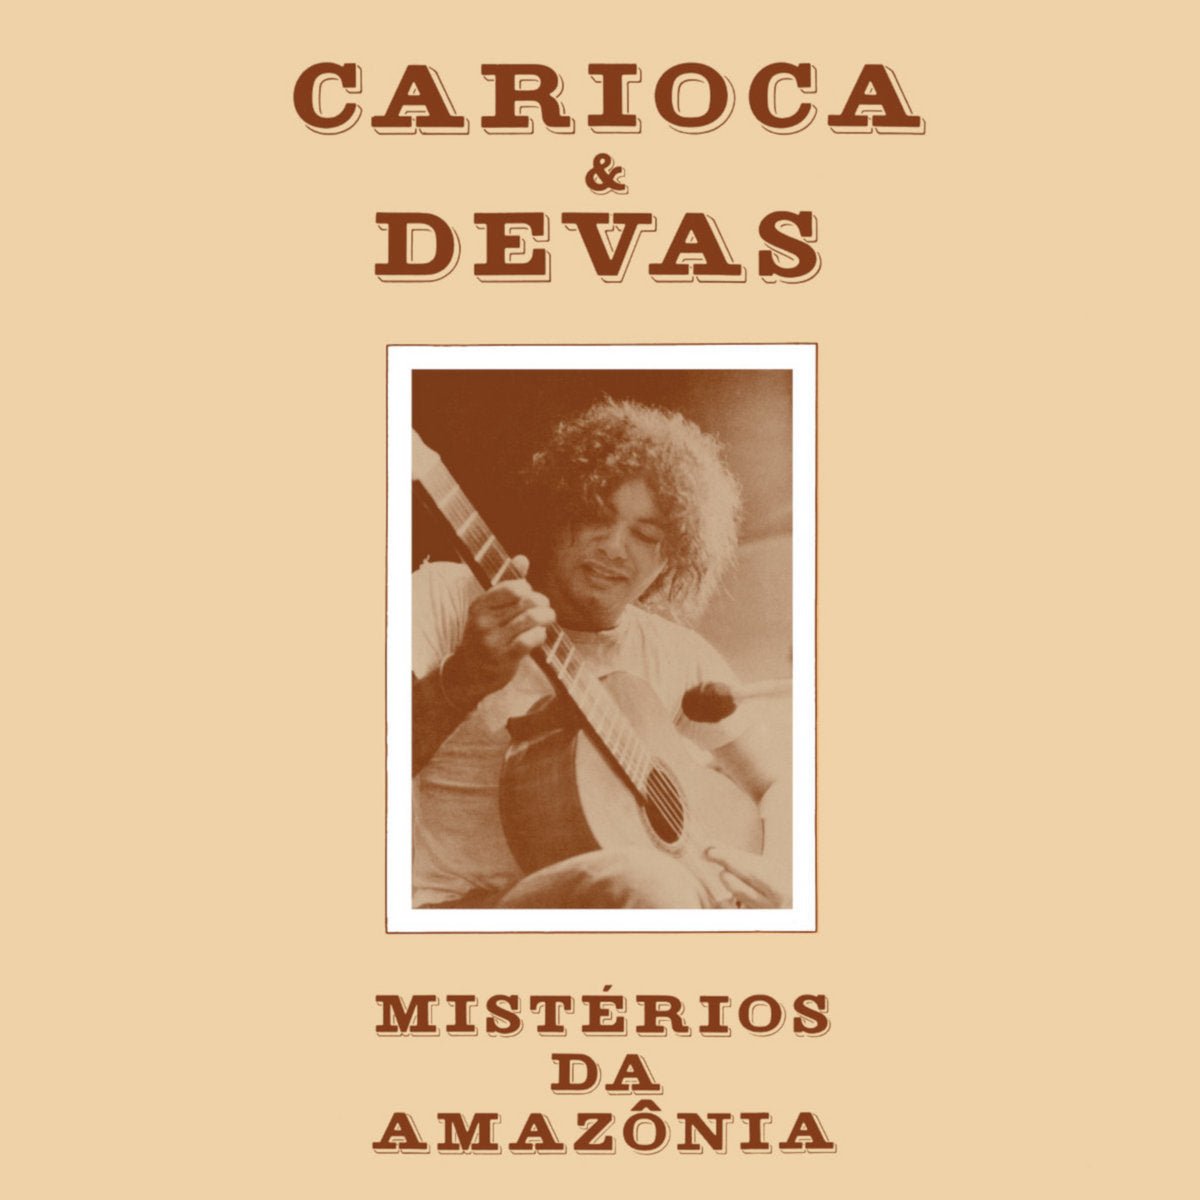 Carioca & Devas - Mistérios da Amazônia - 33RPM